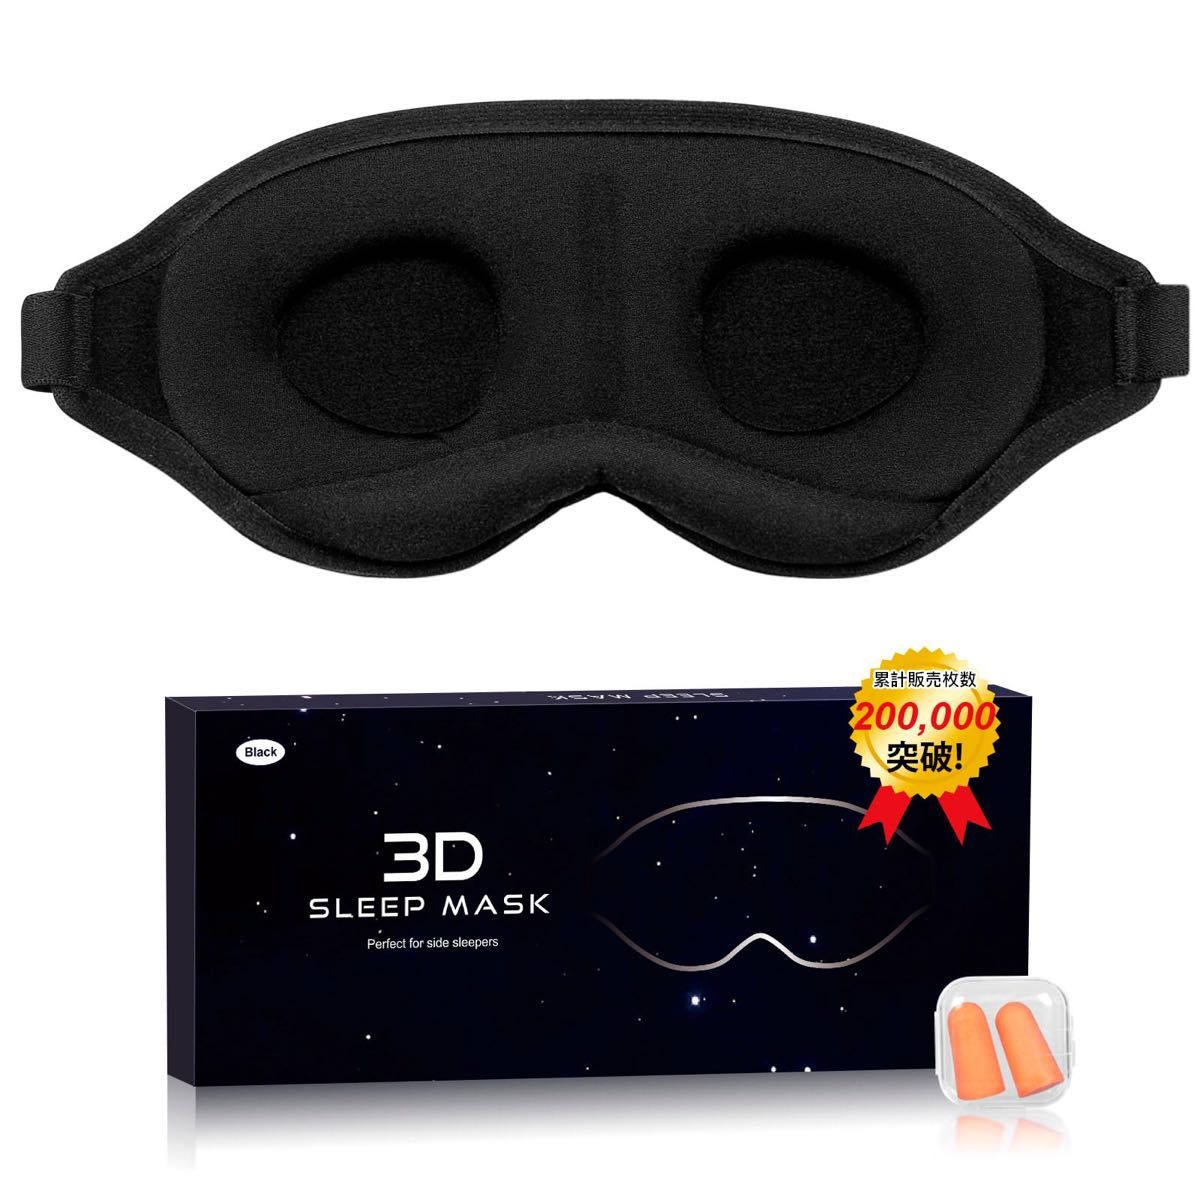 アイマスク 睡眠用 3D立体型 目隠し 安眠 遮光 通気性 圧迫感なし サイズ調整可能  男女兼用ブラック